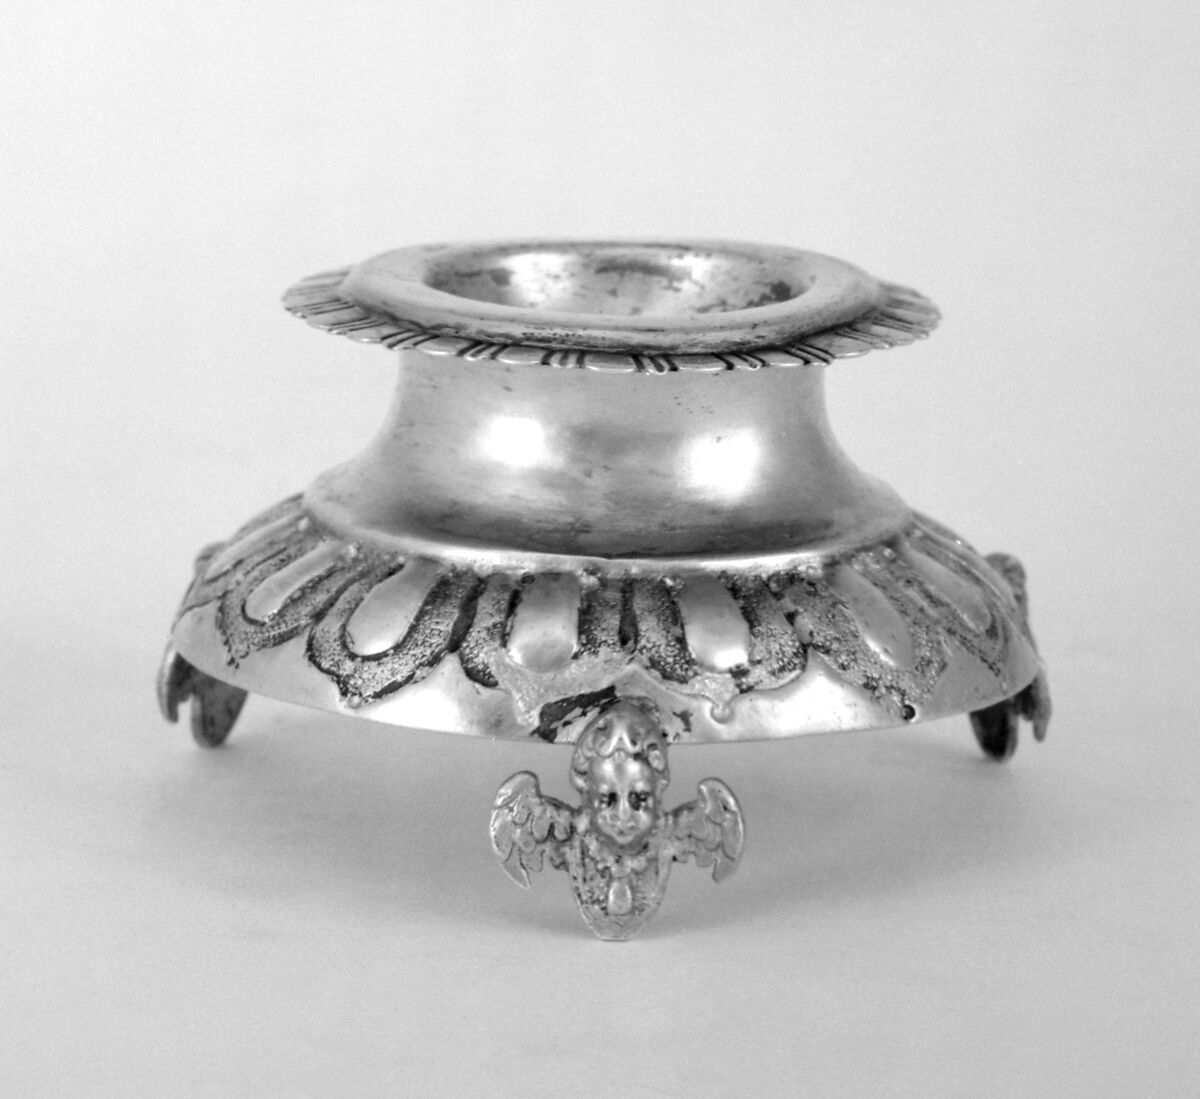 Circular salt, Silver gilt, German, Augsburg 